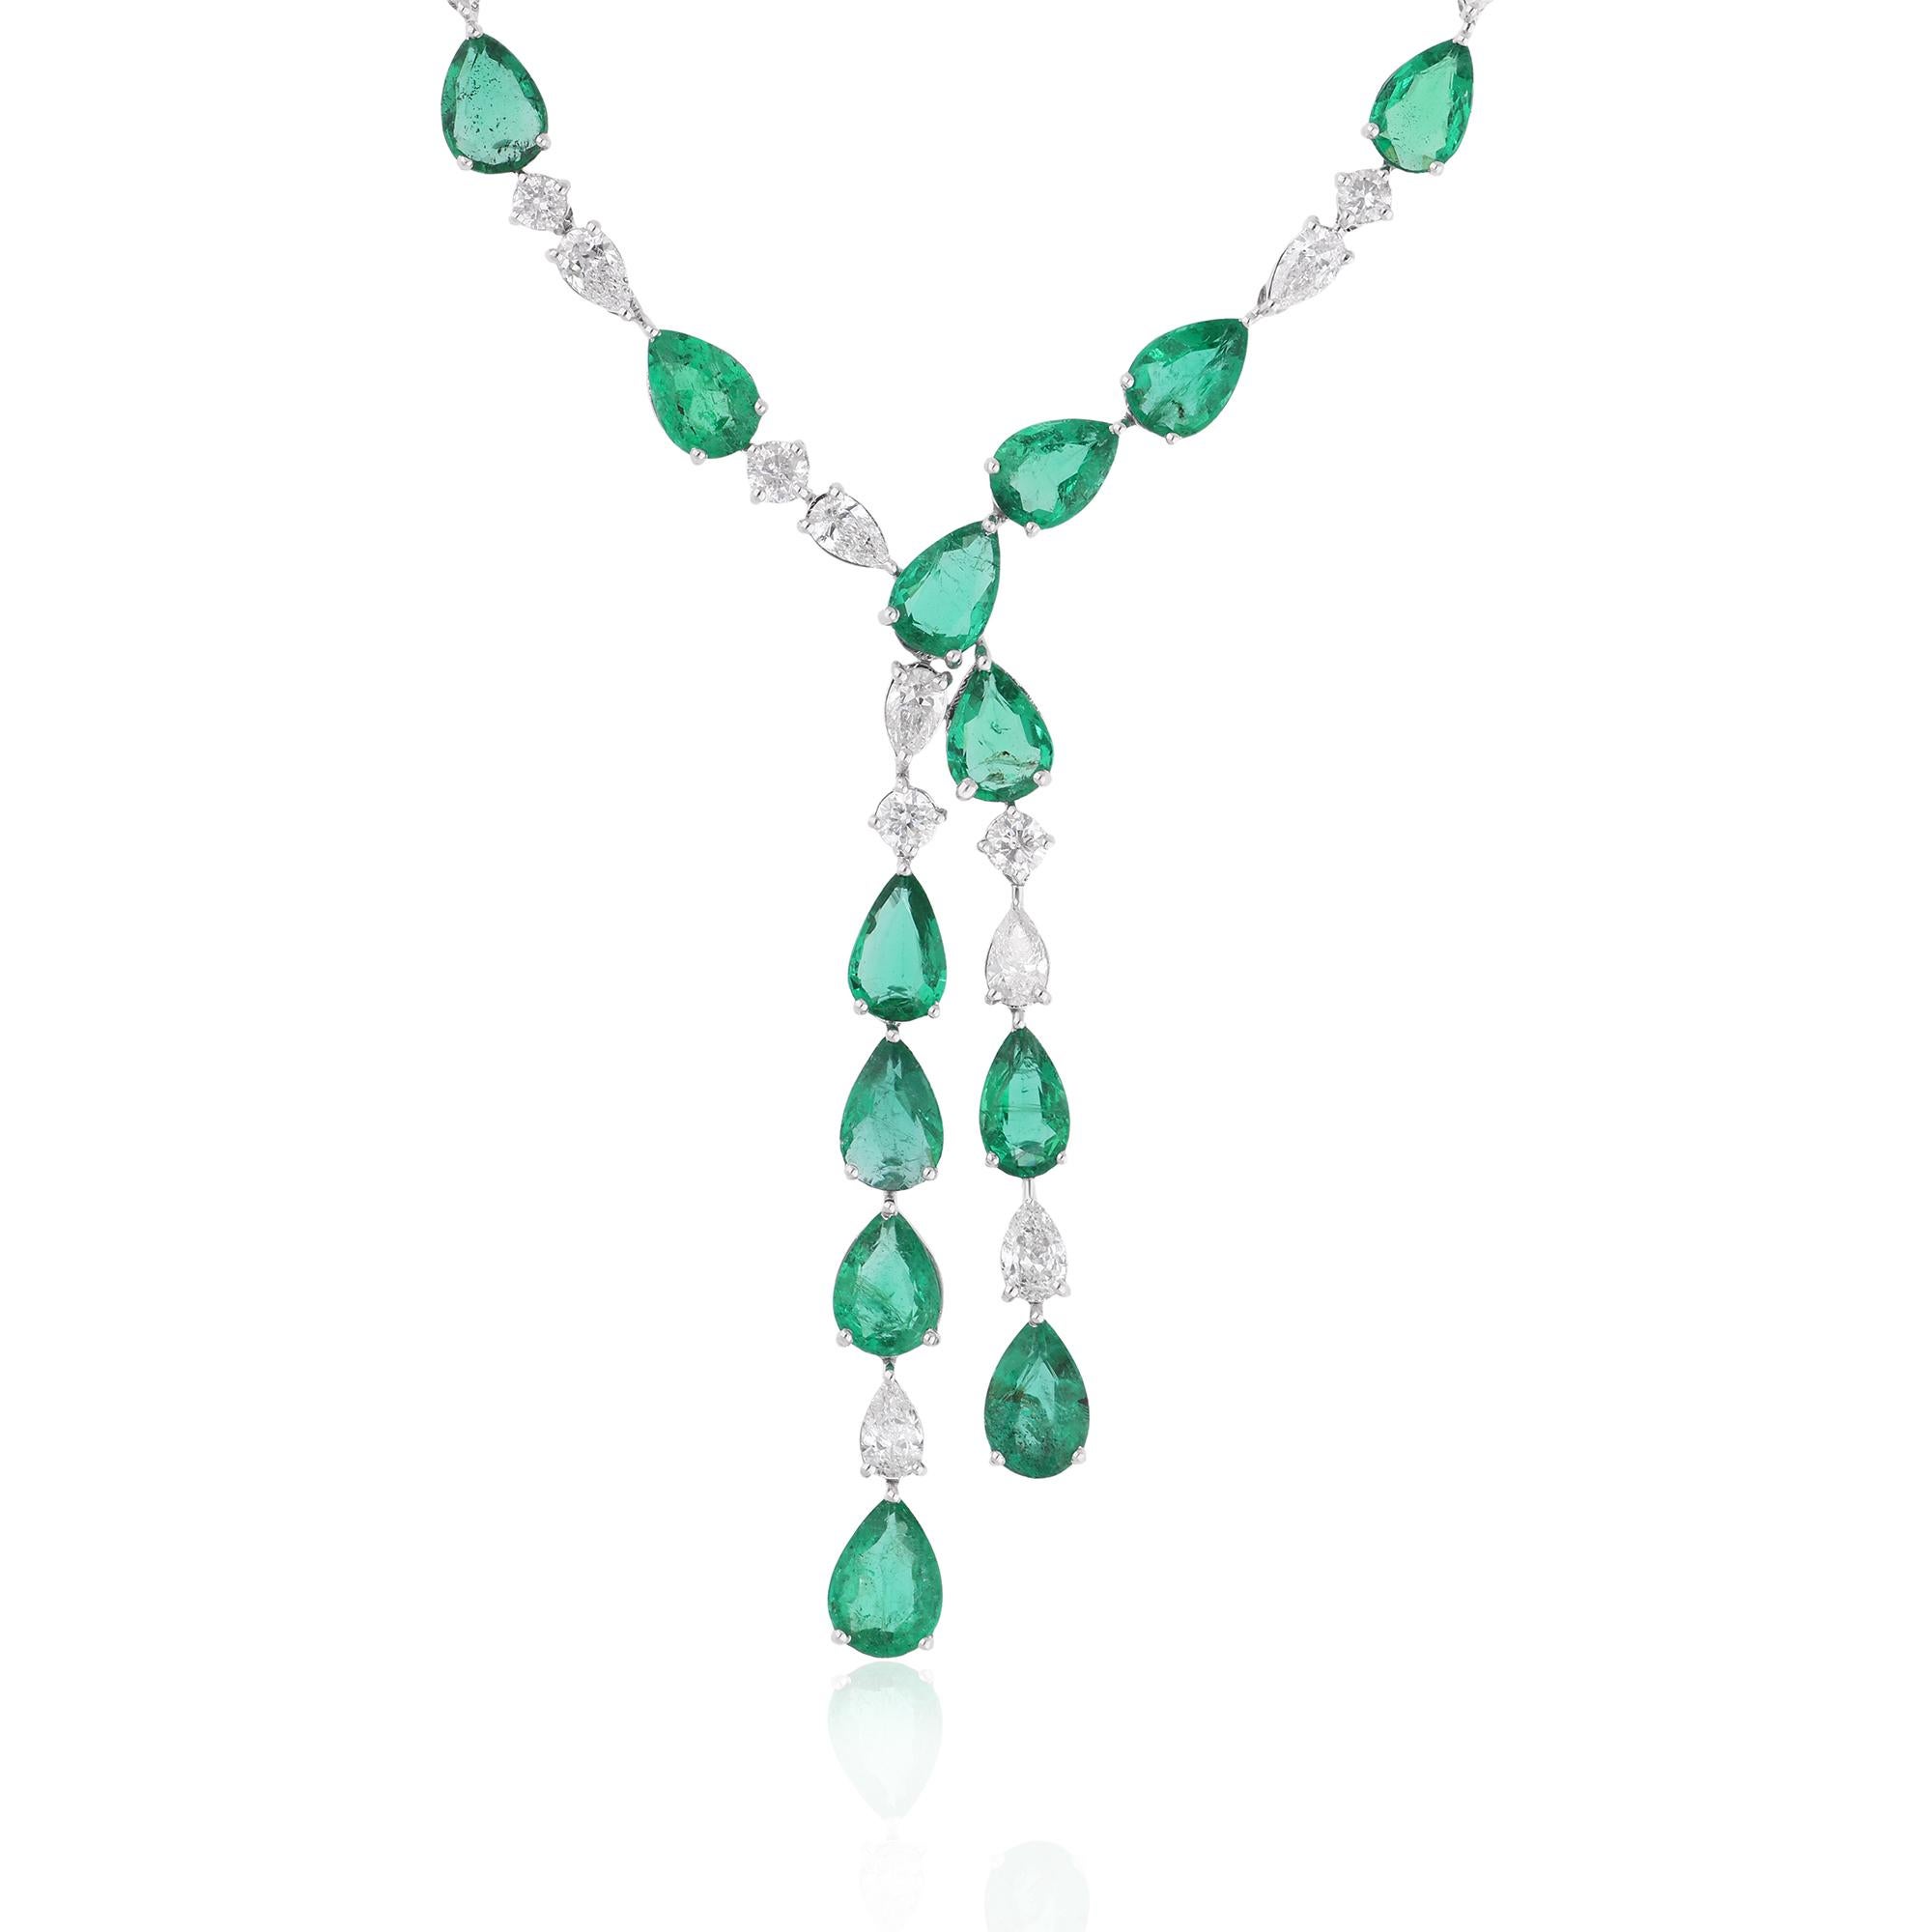 Der Smaragd ist von funkelnden Diamanten umgeben, die seine Schönheit unterstreichen und ein faszinierendes Lichtspiel erzeugen. Die Diamanten verleihen dem Design einen Hauch von Glamour und Raffinesse, akzentuieren die leuchtende Farbe des